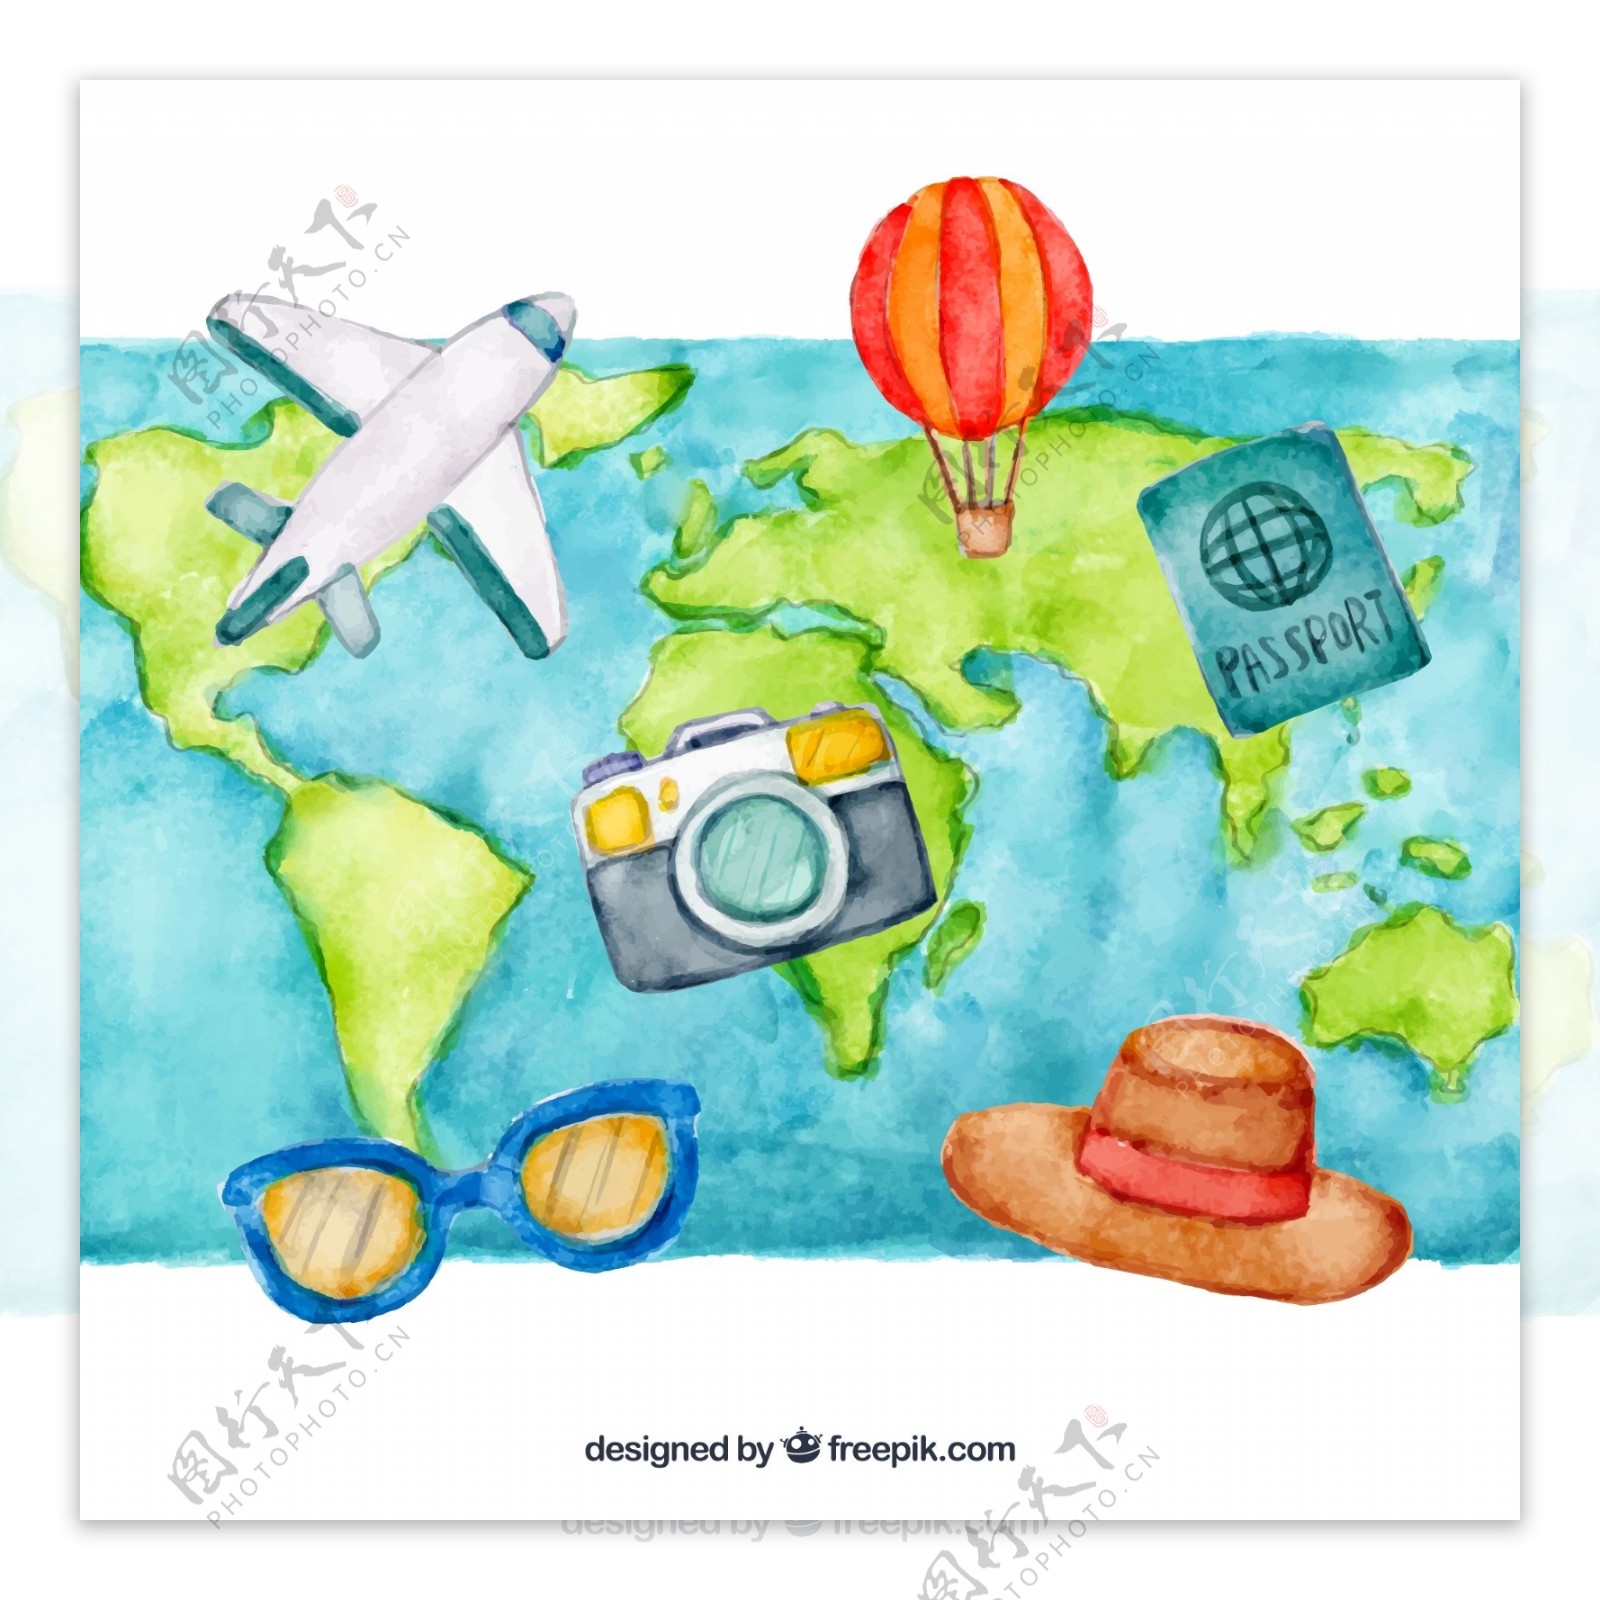 彩绘世界地图和旅行元素